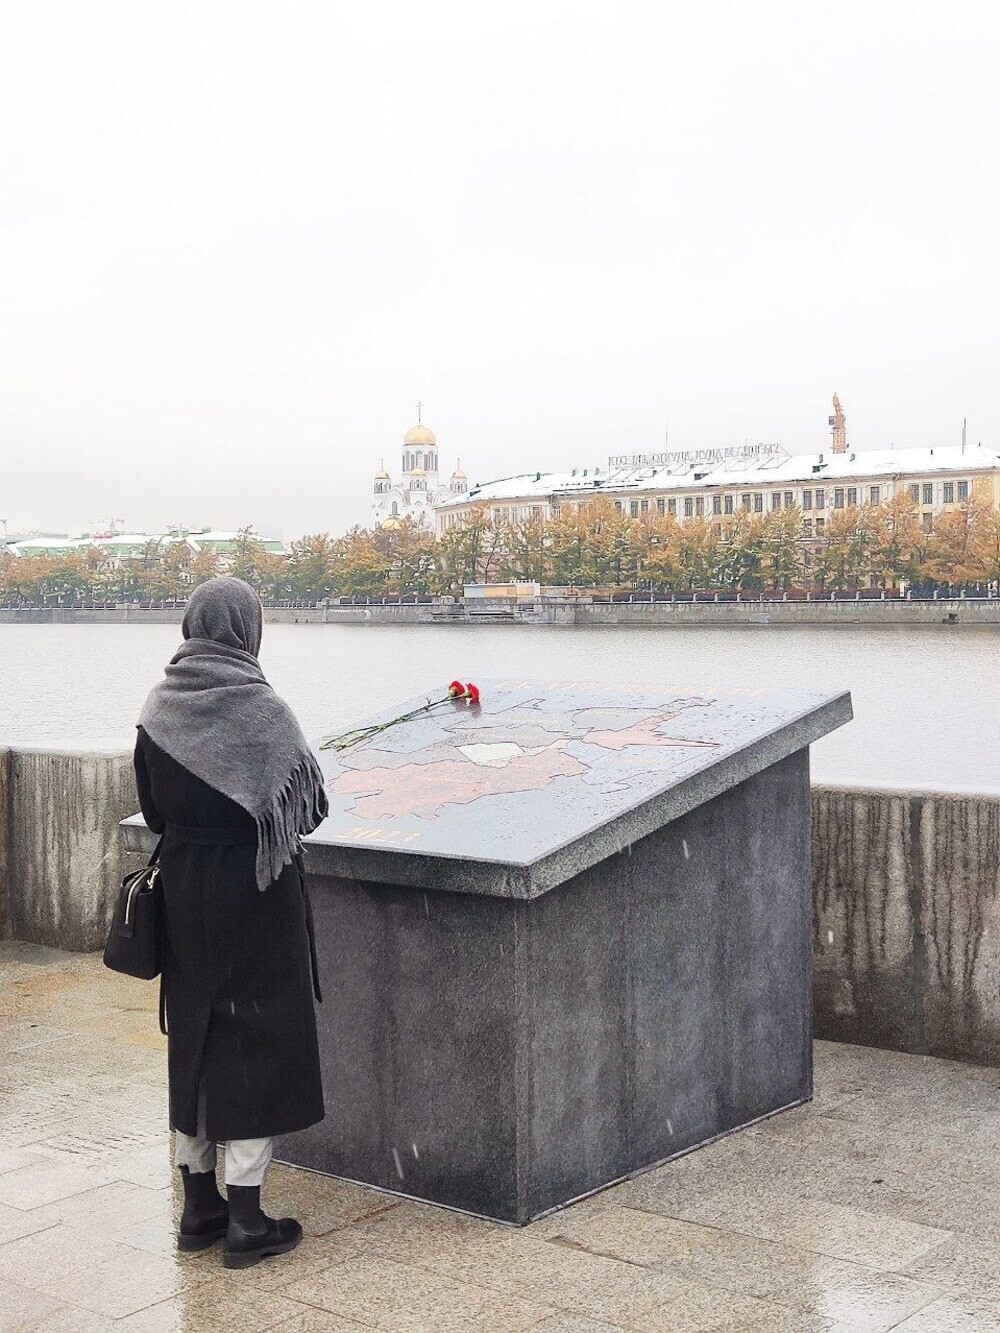 В Екатеринбурге установили гранитную карту города, местные жители назвали её могильной плитой